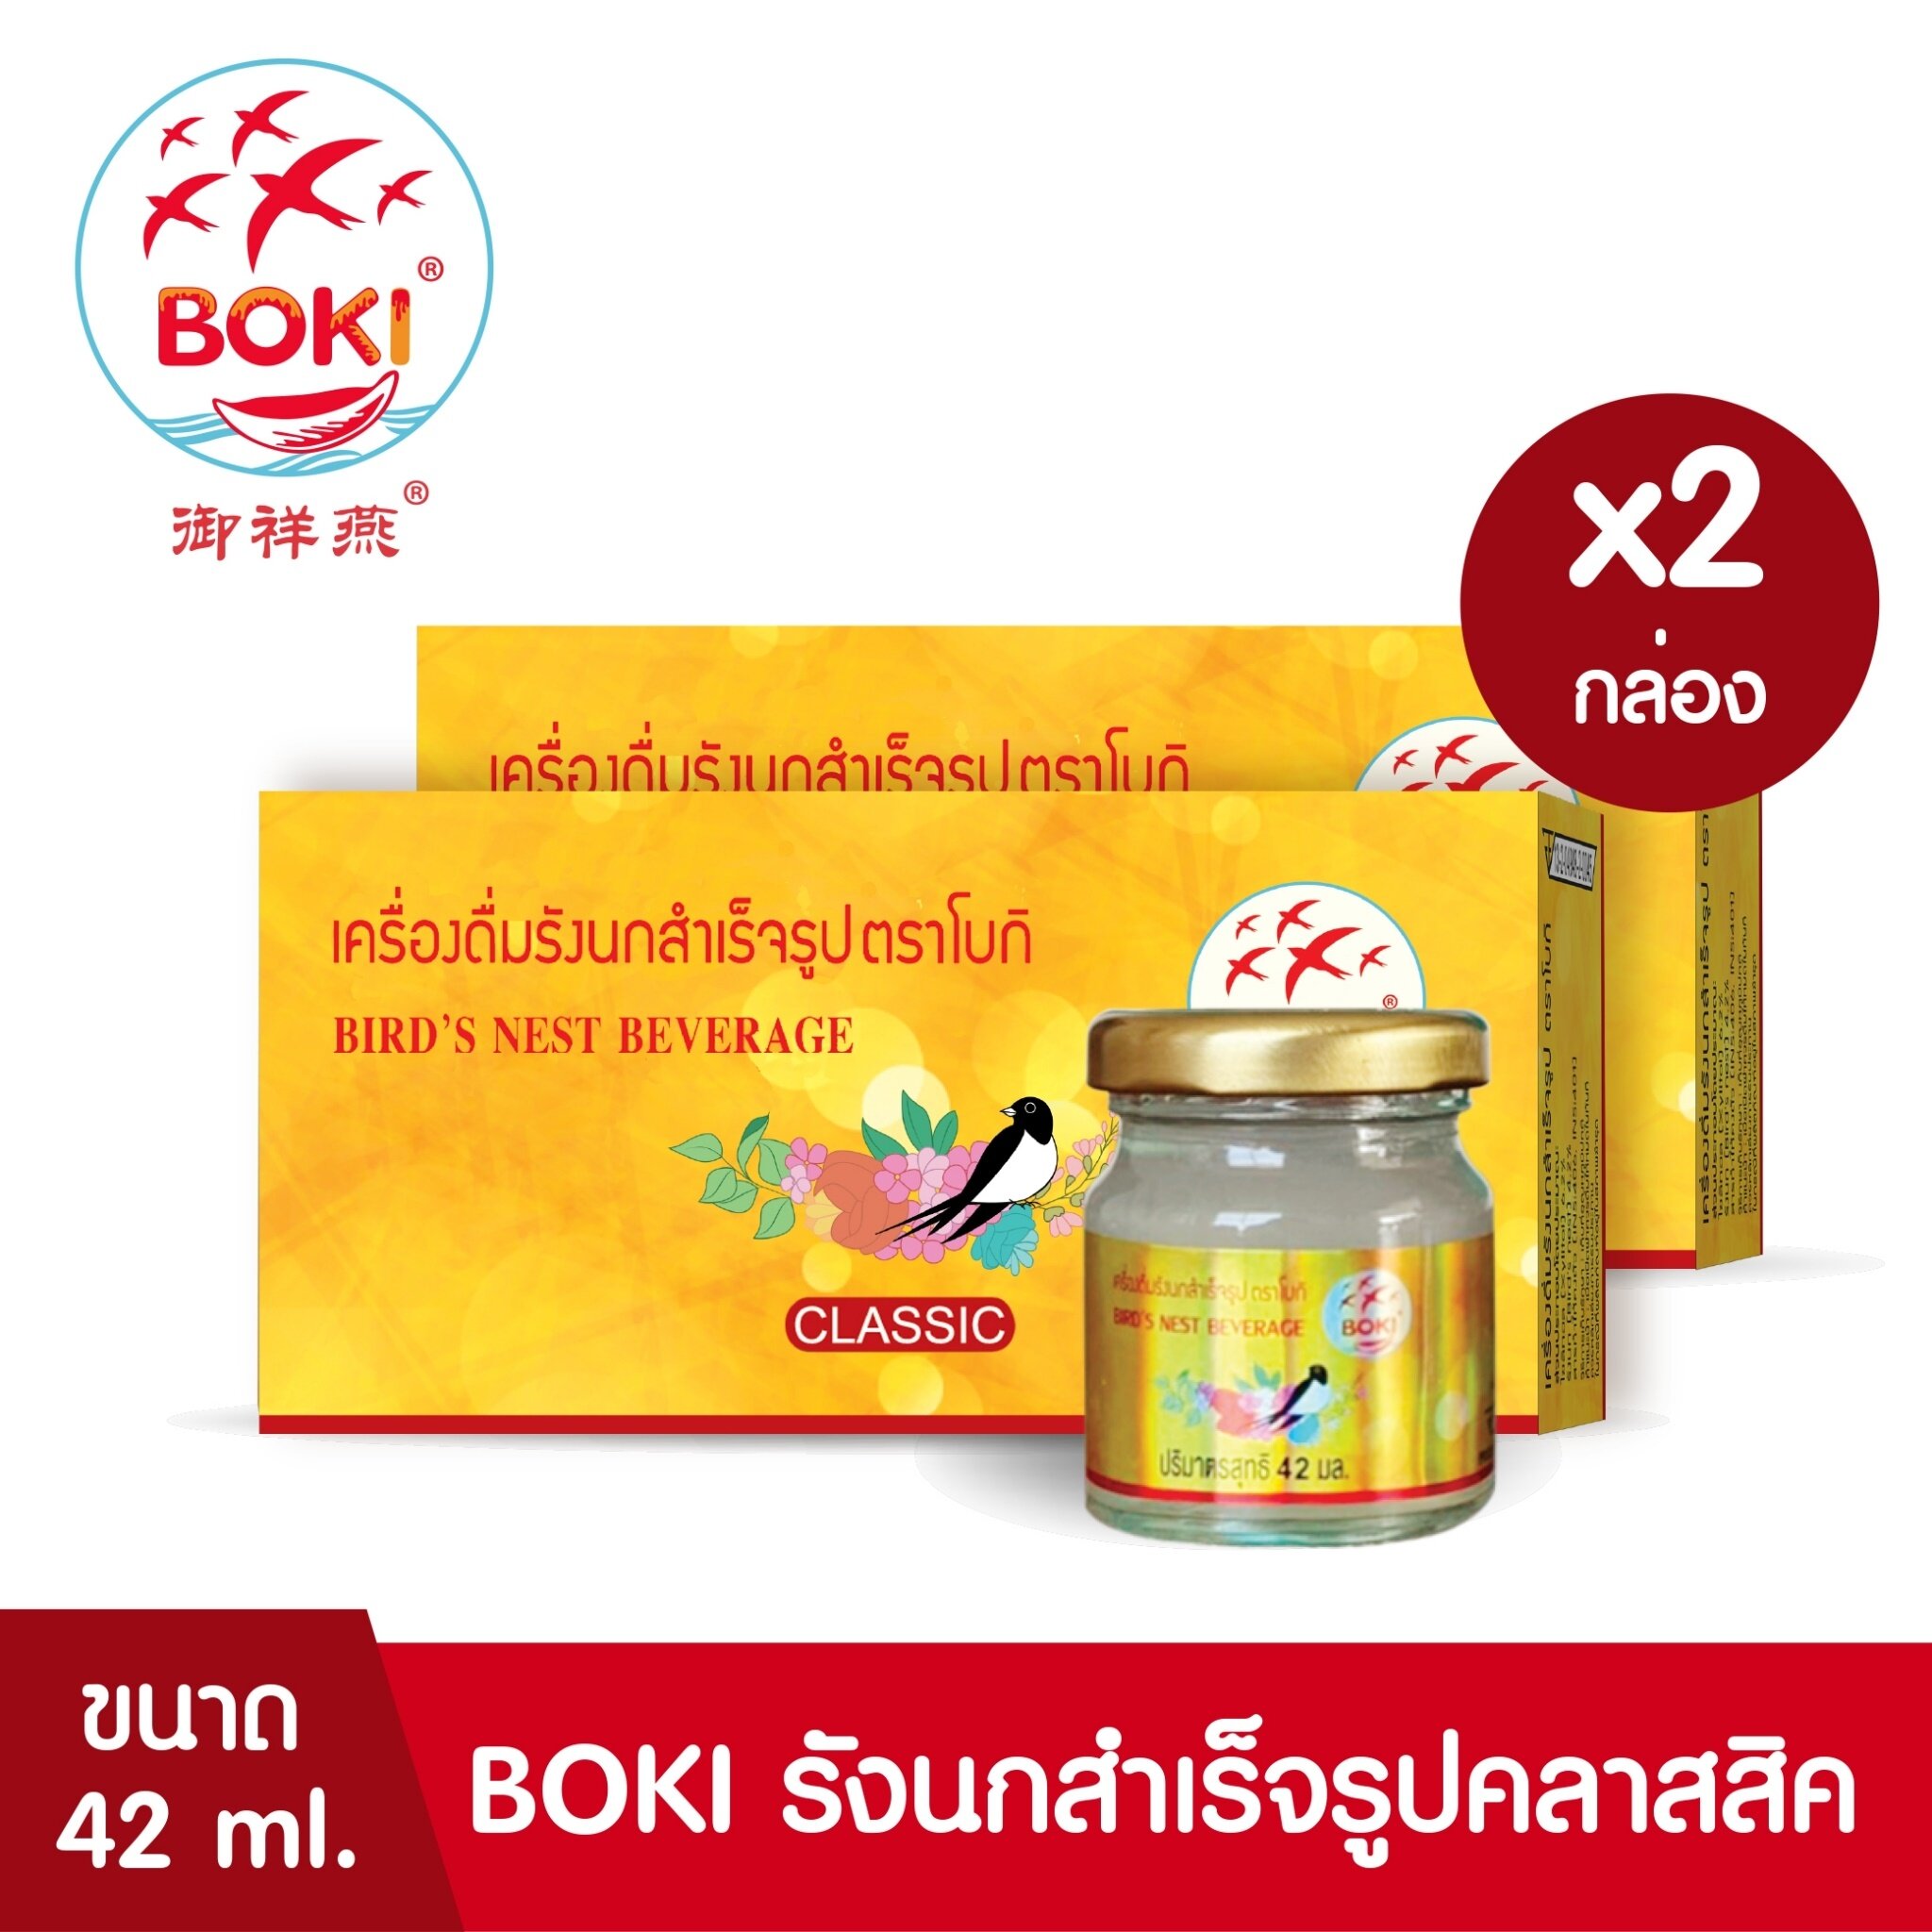 BOKI เครื่องดื่มรังนกสำเร็จรูป คลาสสิค (42mlx3)  2 กล่อง รังนกเพื่อสุขภาพ Bird’s nest beverage Classic